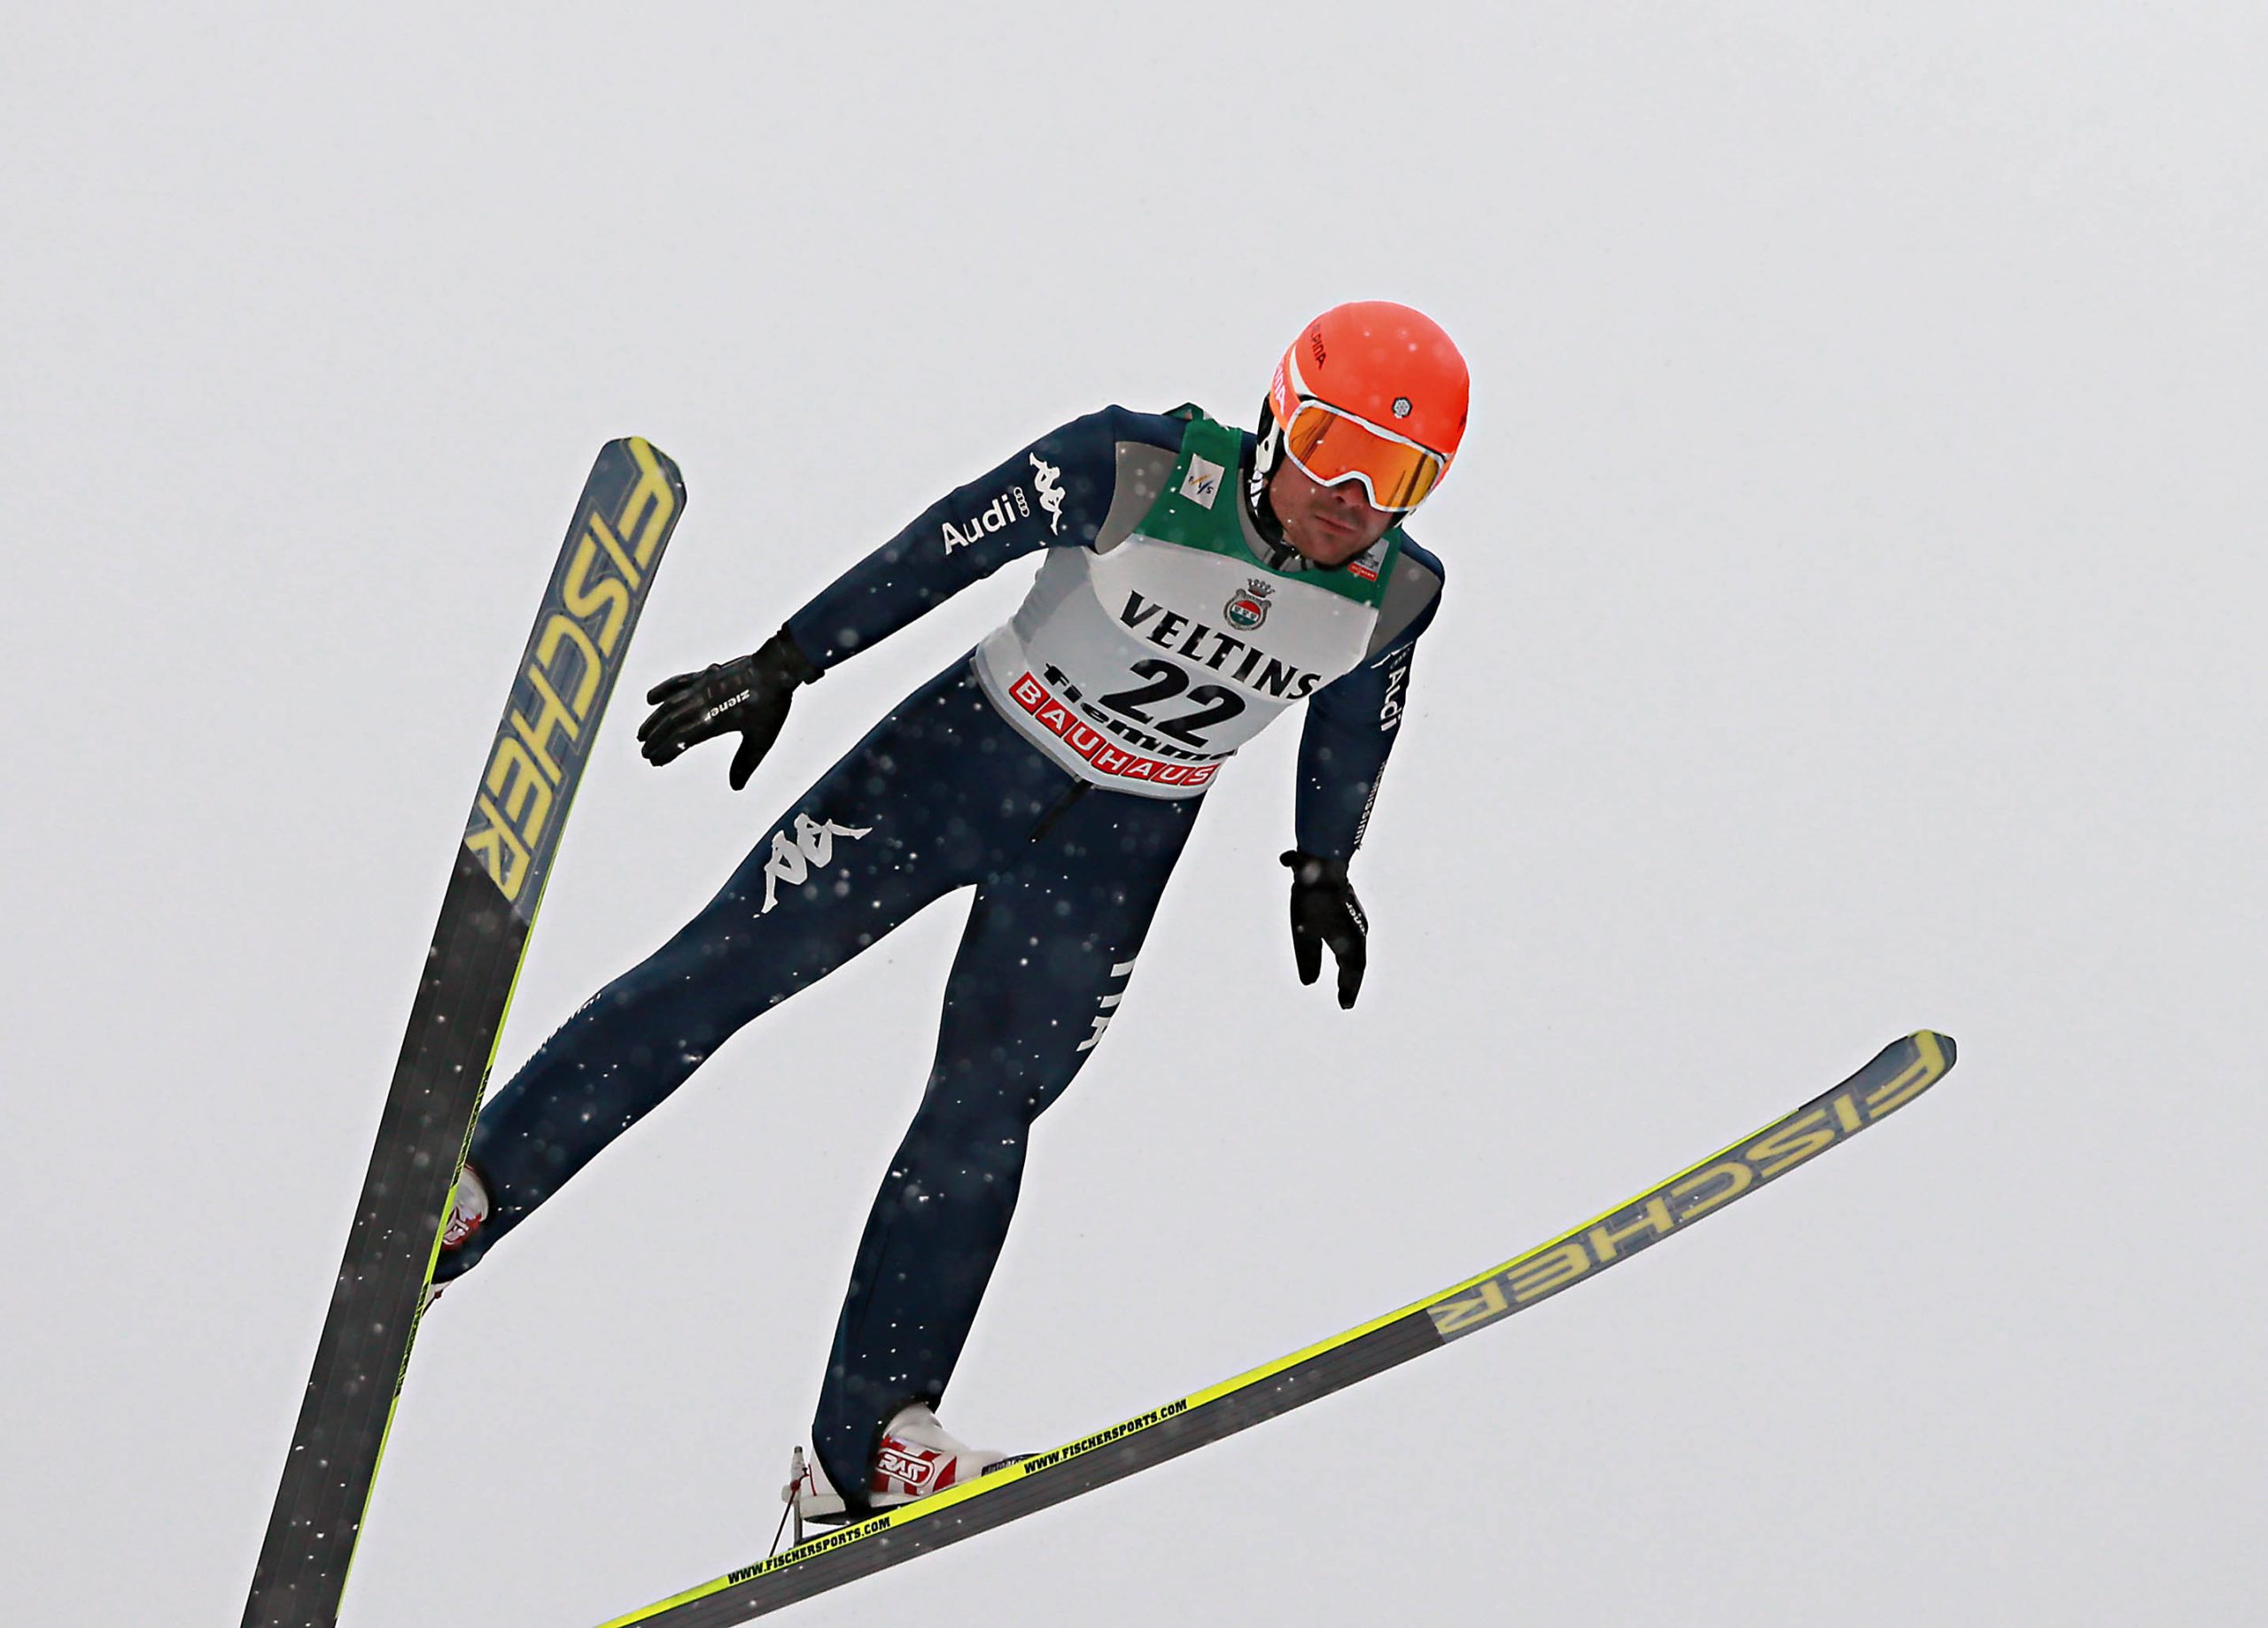 L'atleta altoatesino Lukas Runggaldier durante una prova di salto.